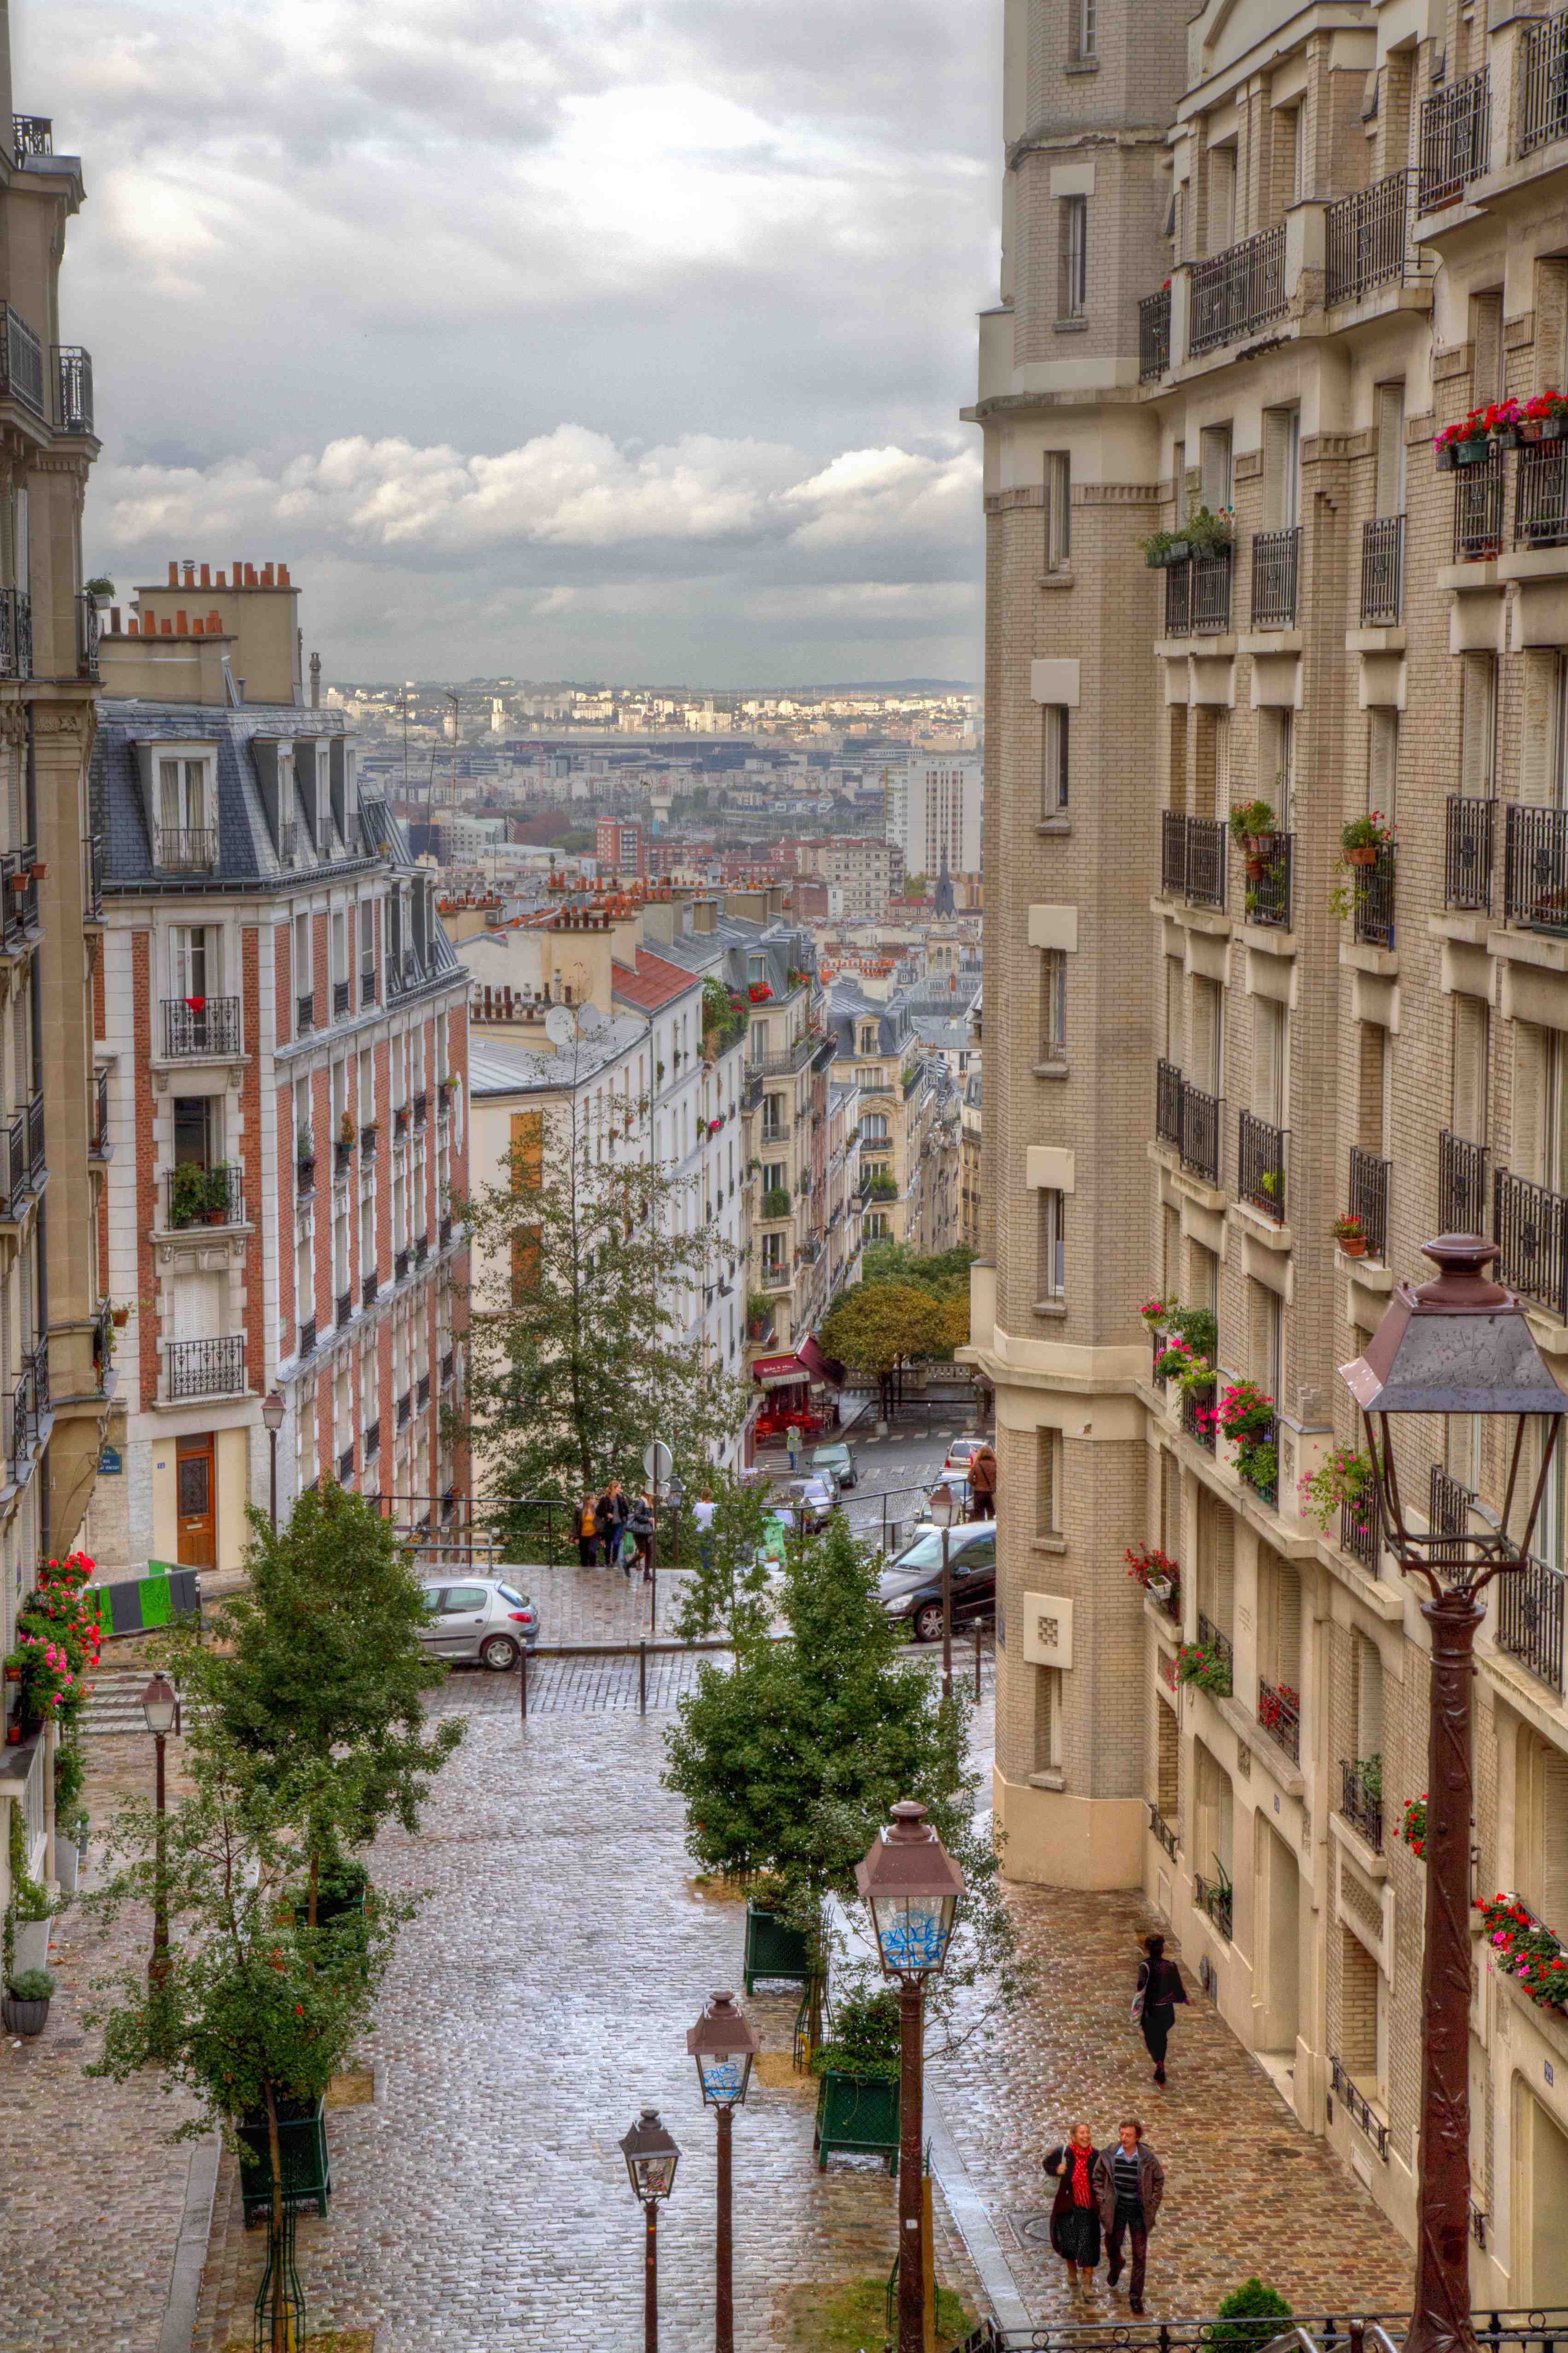 Арендная плата под контролем: ставки в Париже и Лилле будут стандартизированы | Фотография 1 | ee24